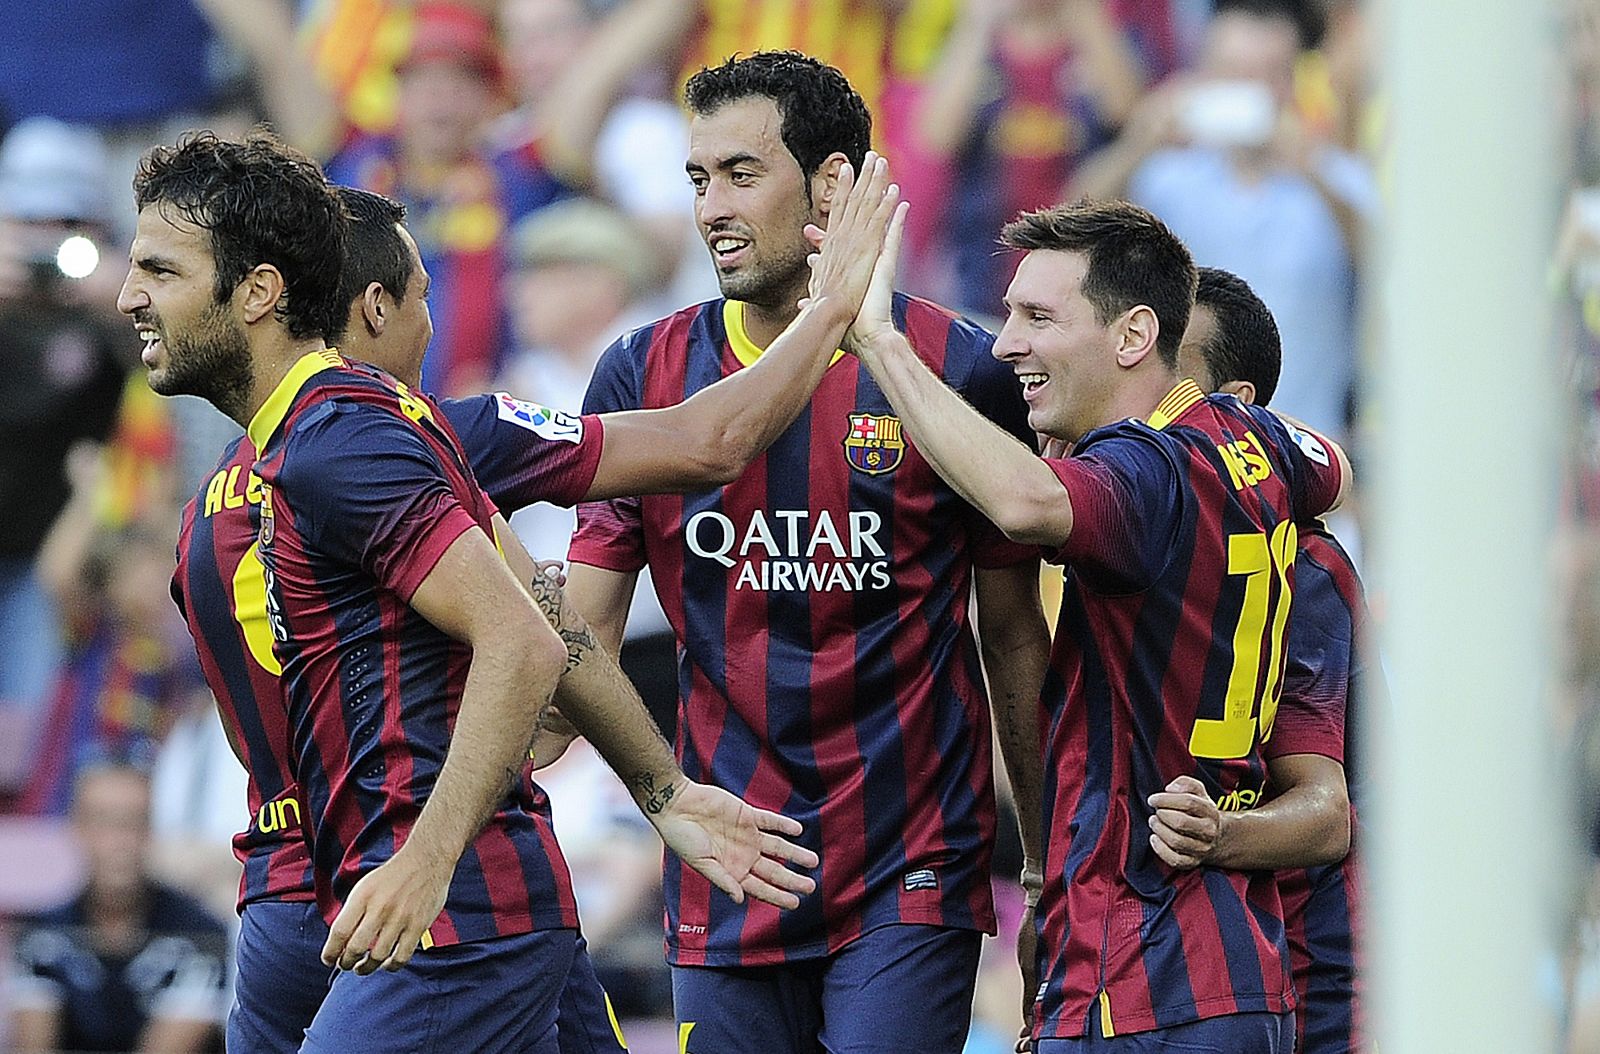 El FC Barcelona ha arrancado con mucha fuerza la Liga 2013/2014.